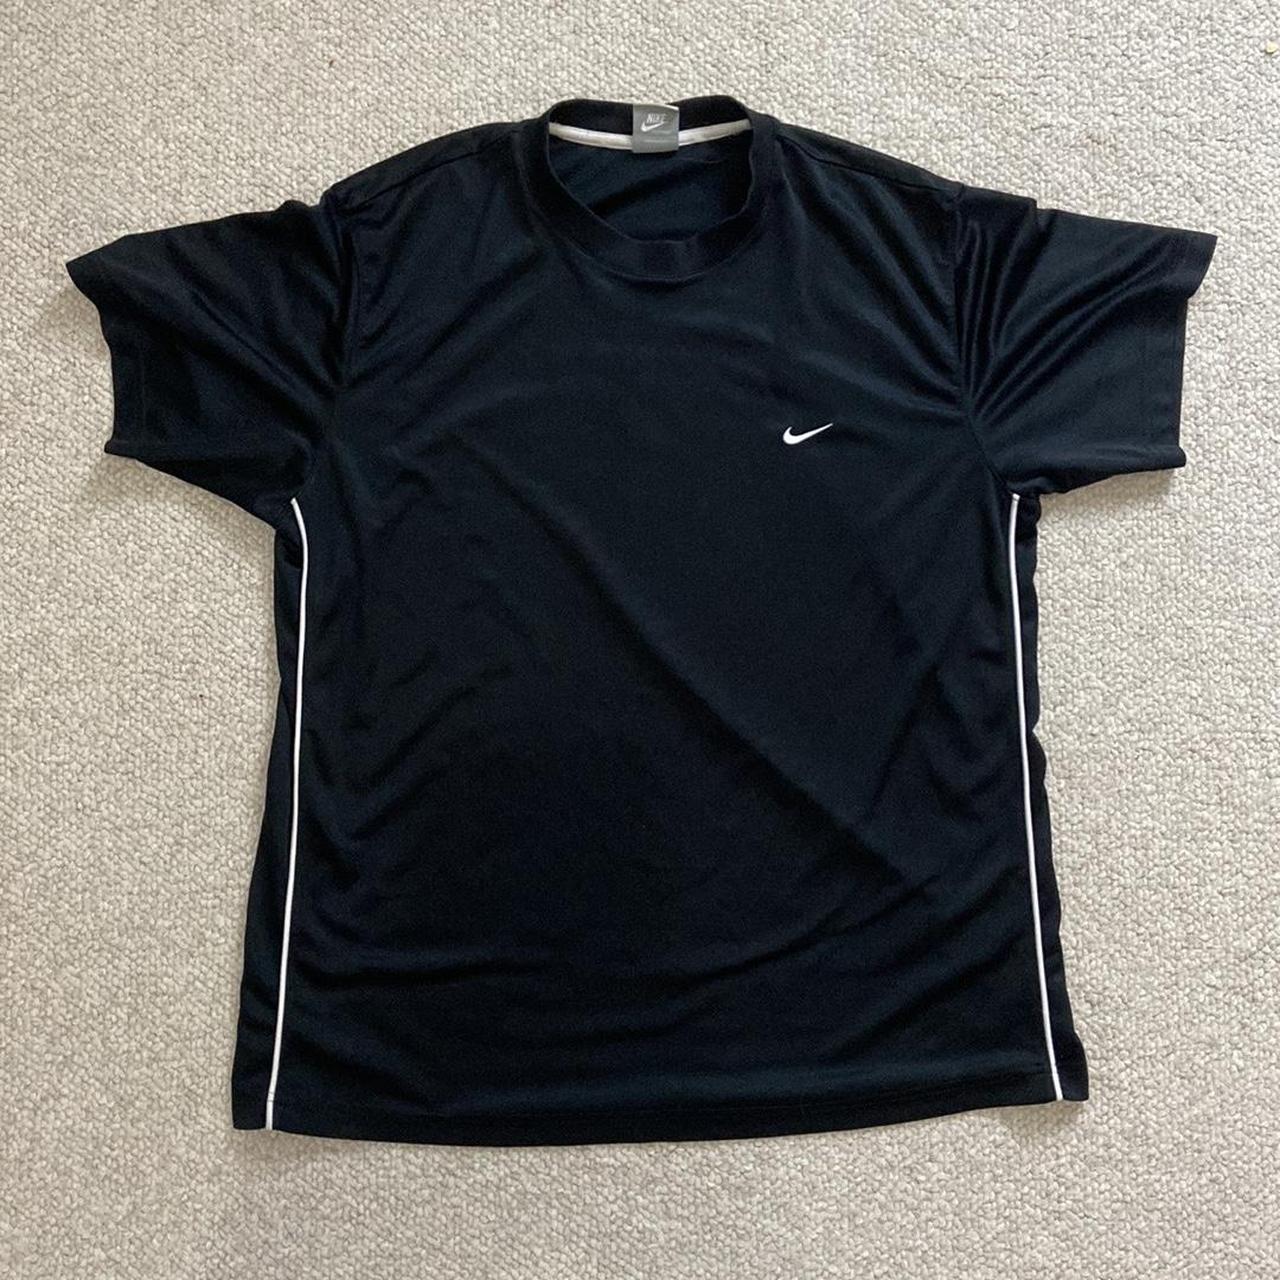 Vintage Black Nike T-Shirt size: men’s extra large... - Depop